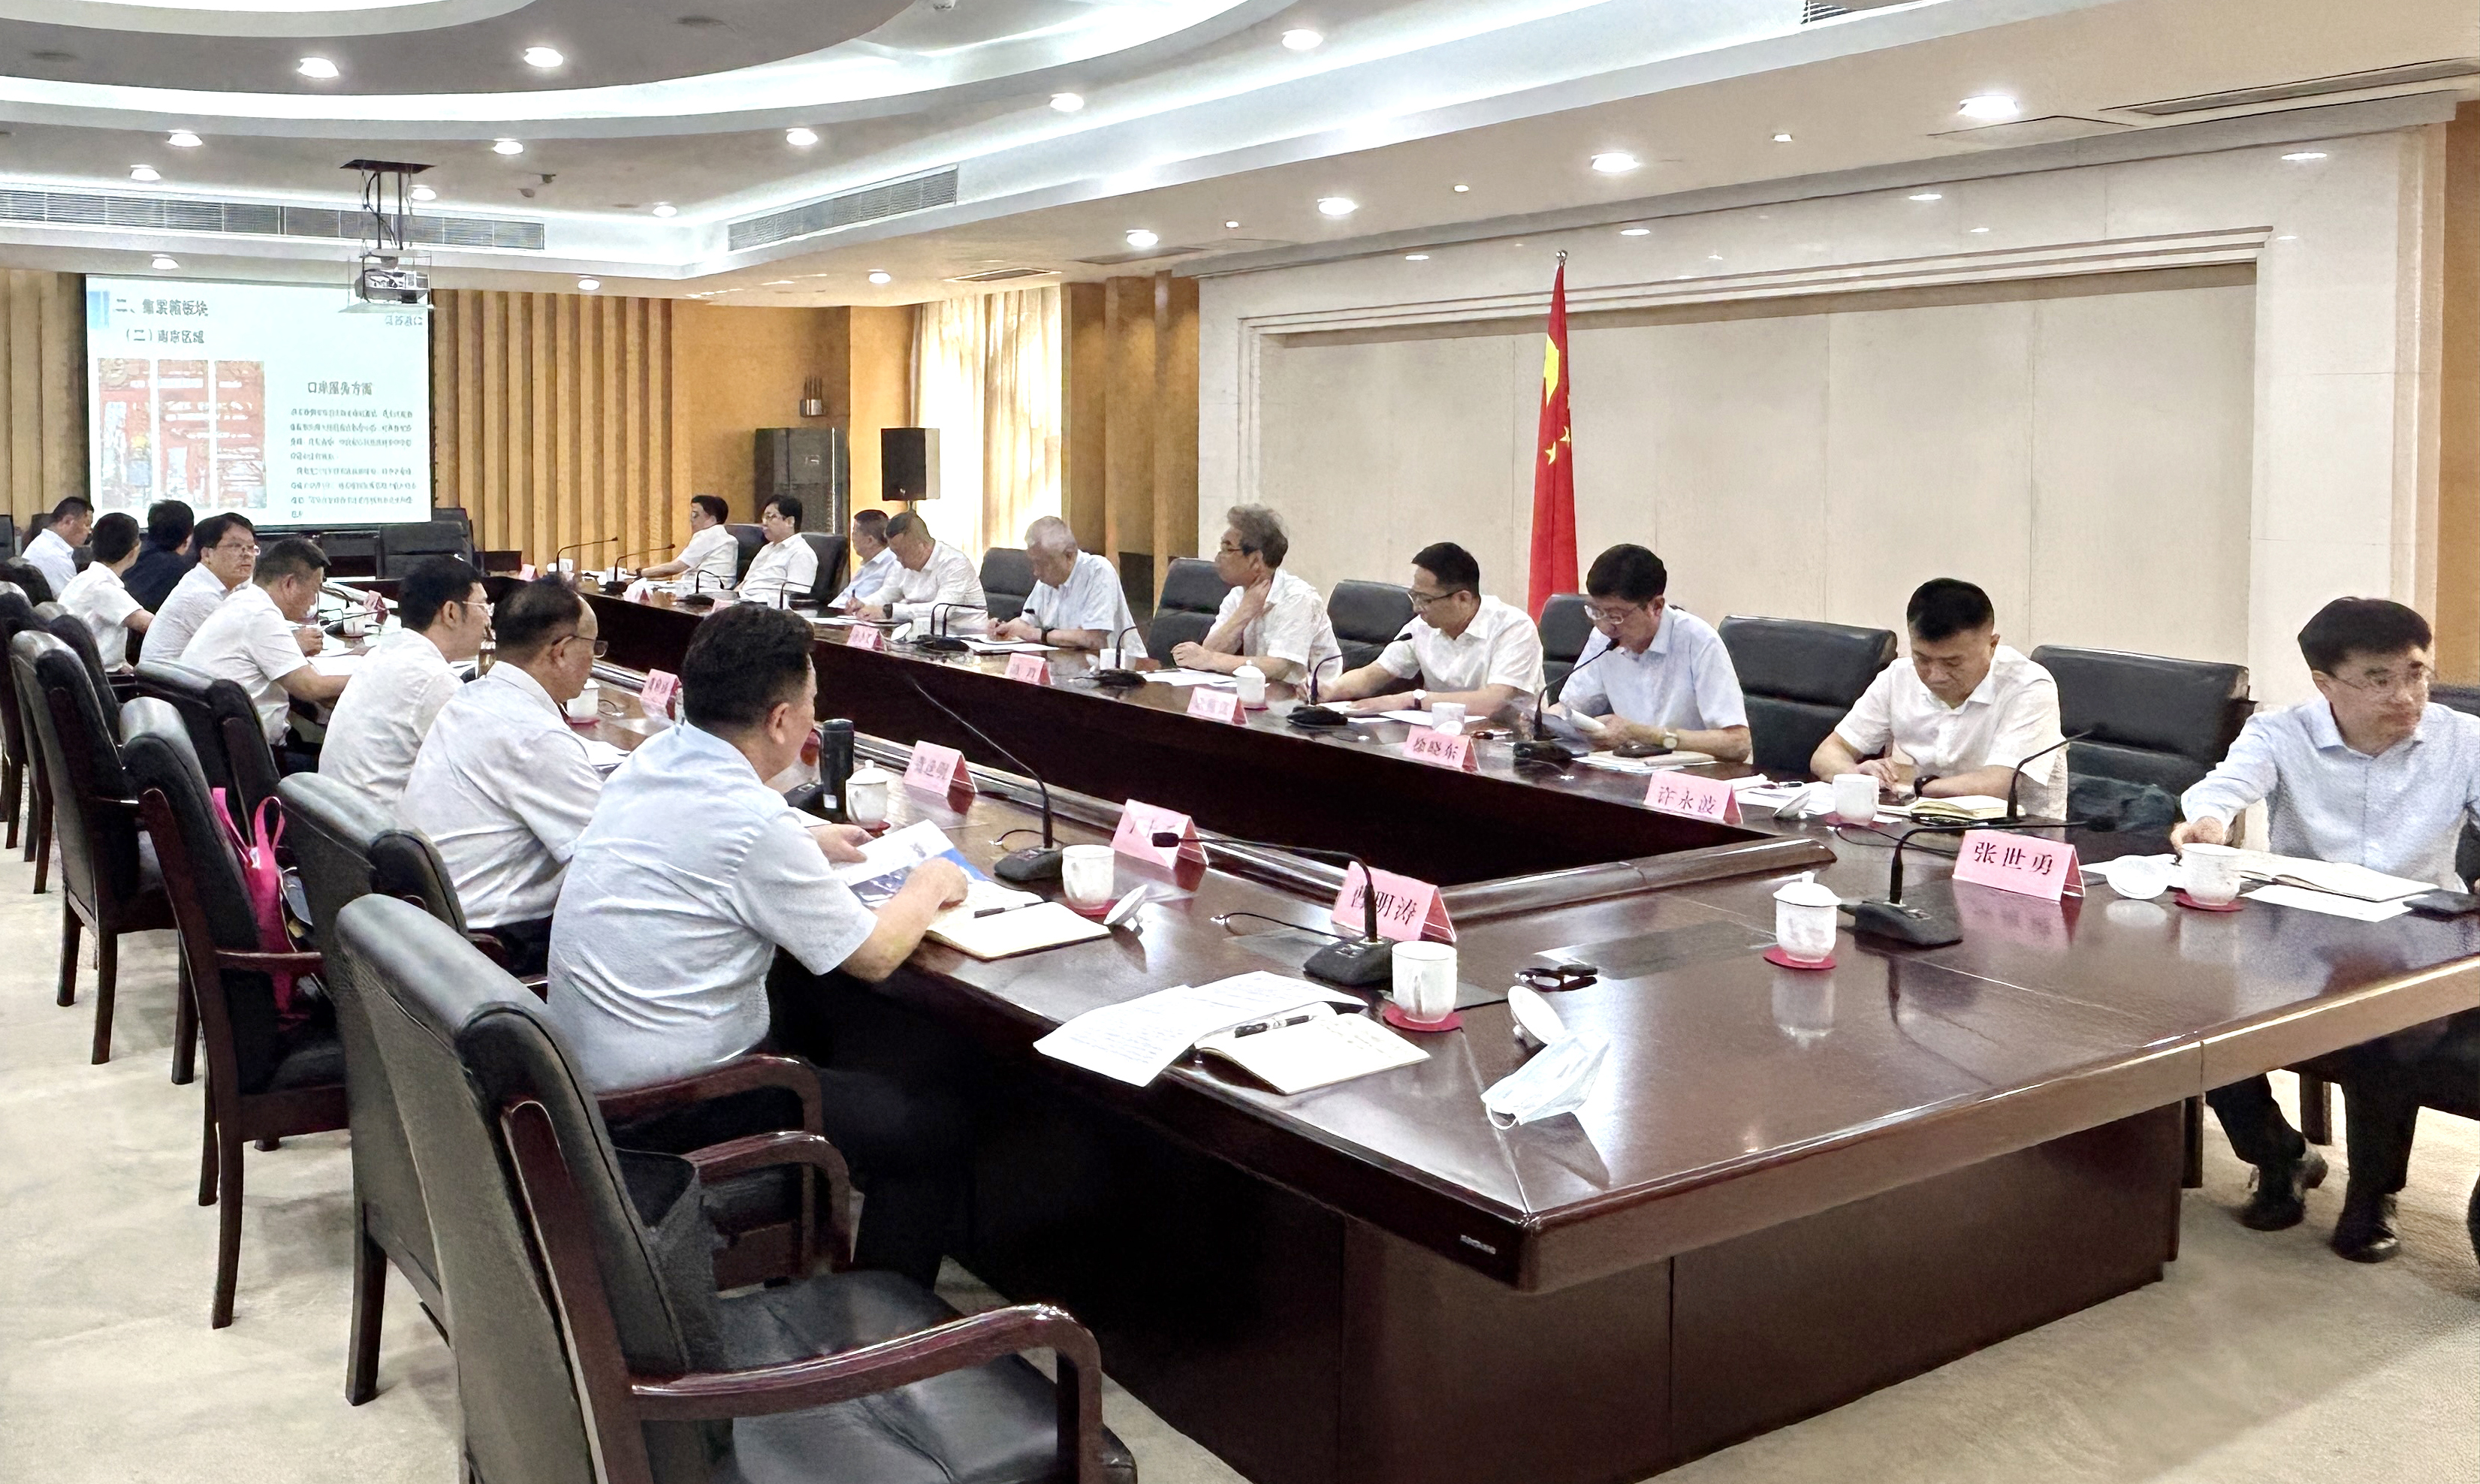 尊龙凯时集团加入徐州市降低企业物流本钱座谈会